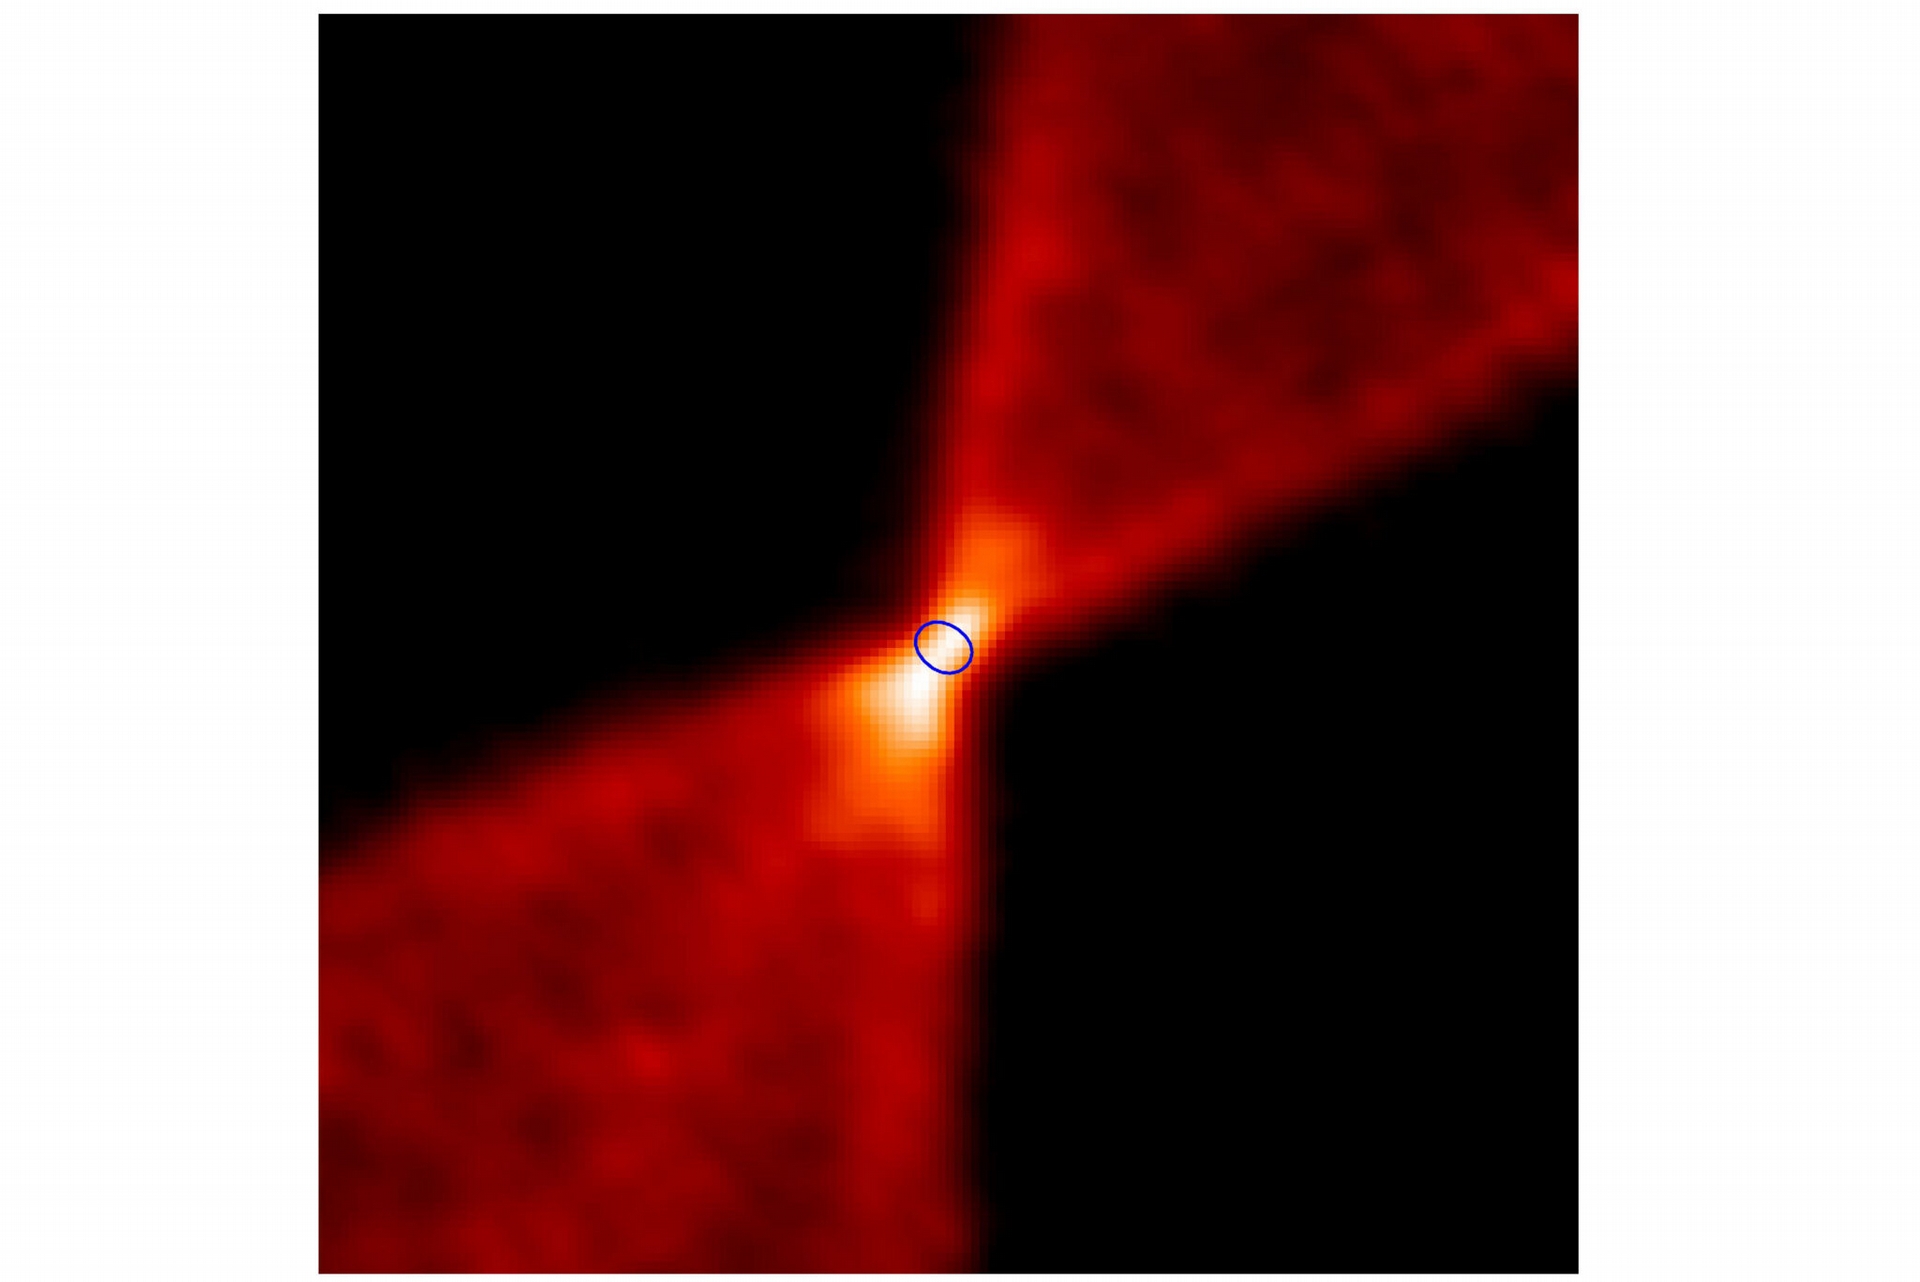 此圖由 ALMA 望遠鏡拍攝，呈現獵戶座大星雲中一個恆星形成區的一氧化碳分布，可見到明顯的分子外流（outflow）構造。富含複雜有機分子的「熱微核」位於藍色圓圈區域。 圖│呂聖元 